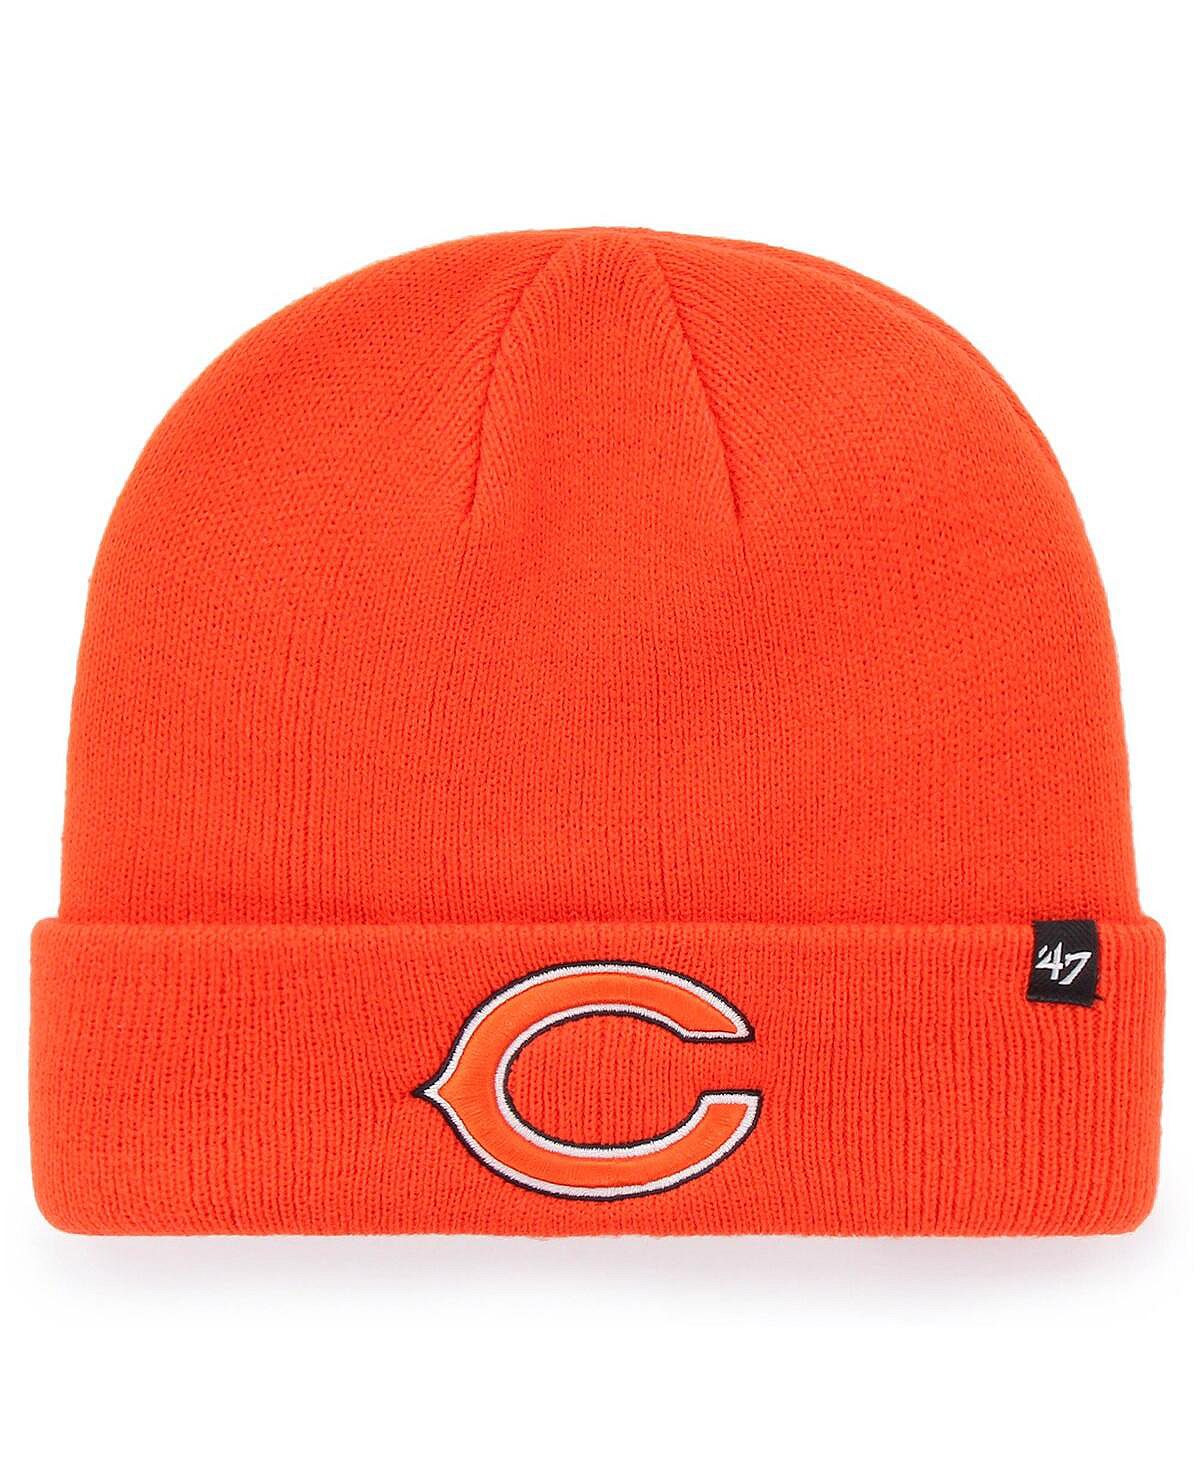 Мужская базовая вязаная шапка с манжетами '47 оранжевого цвета Chicago Bears среднего размера '47 Brand мужская серая вязаная шапка chicago bears highline с манжетами 47 brand